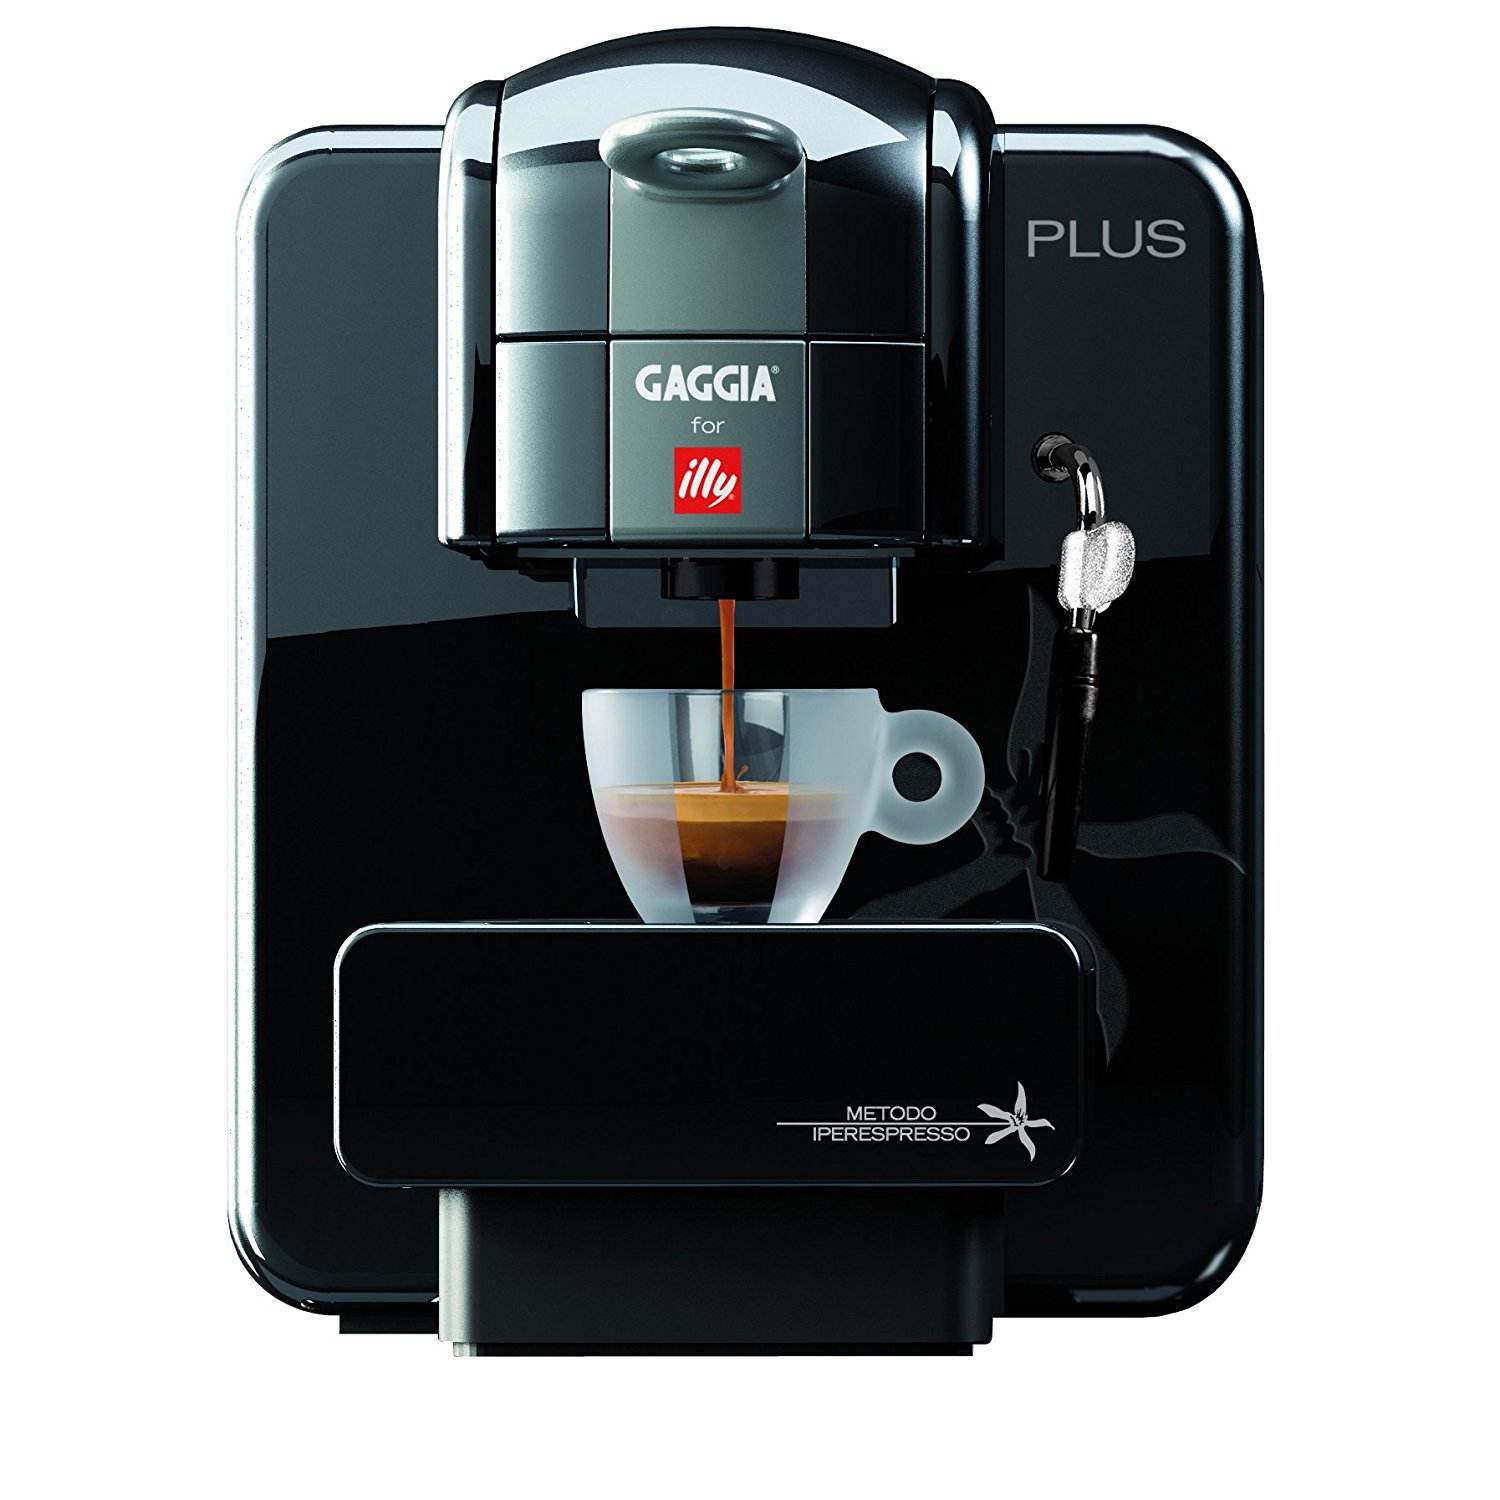 Espresso (Espresso) and espresso machine illy coffee capsules